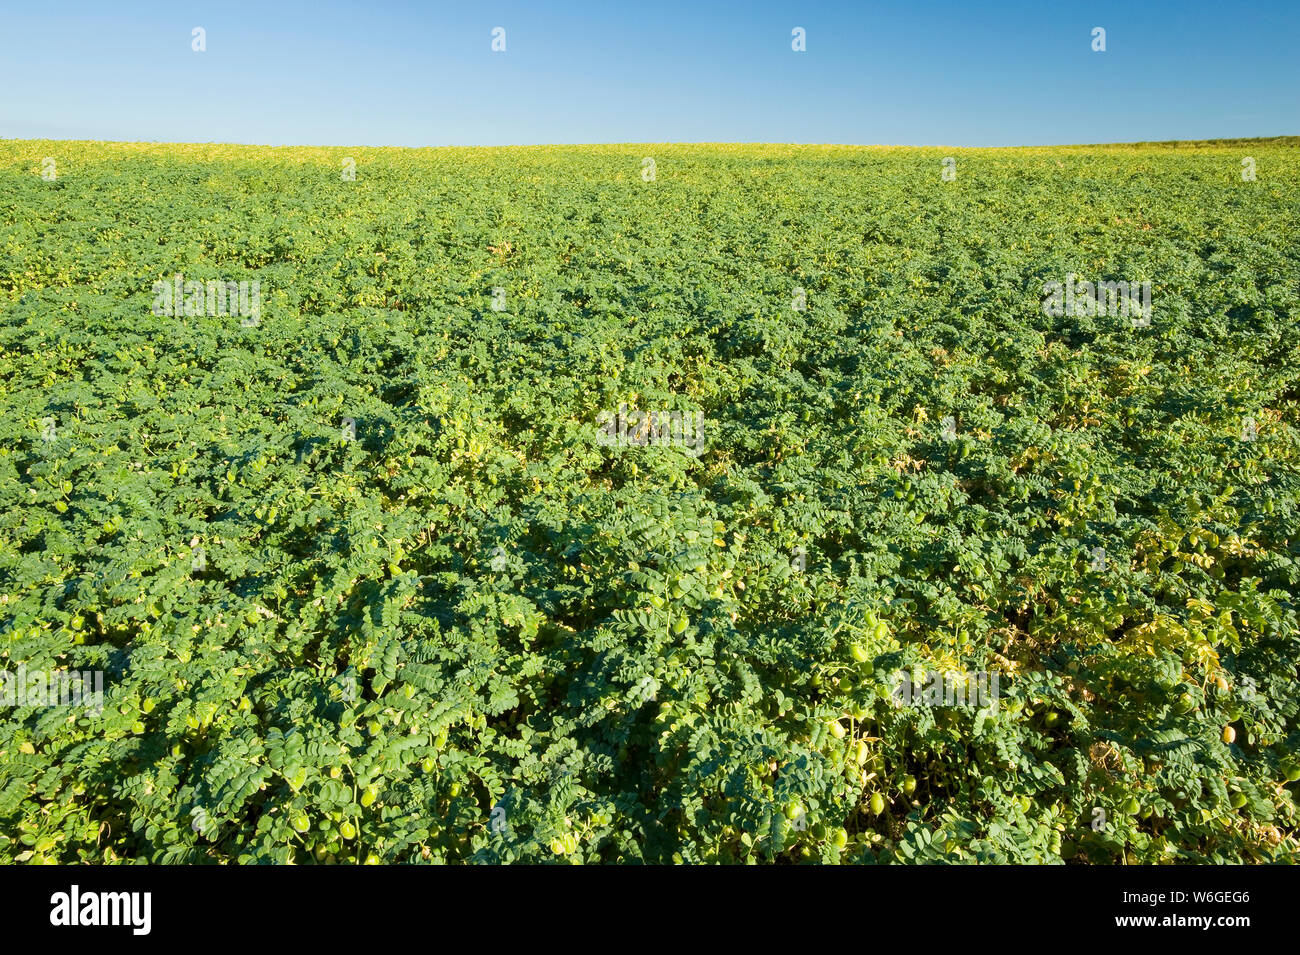 Chickpea field against a blue sky, near Kincaid; Saskatchewan, Canada Stock Photo